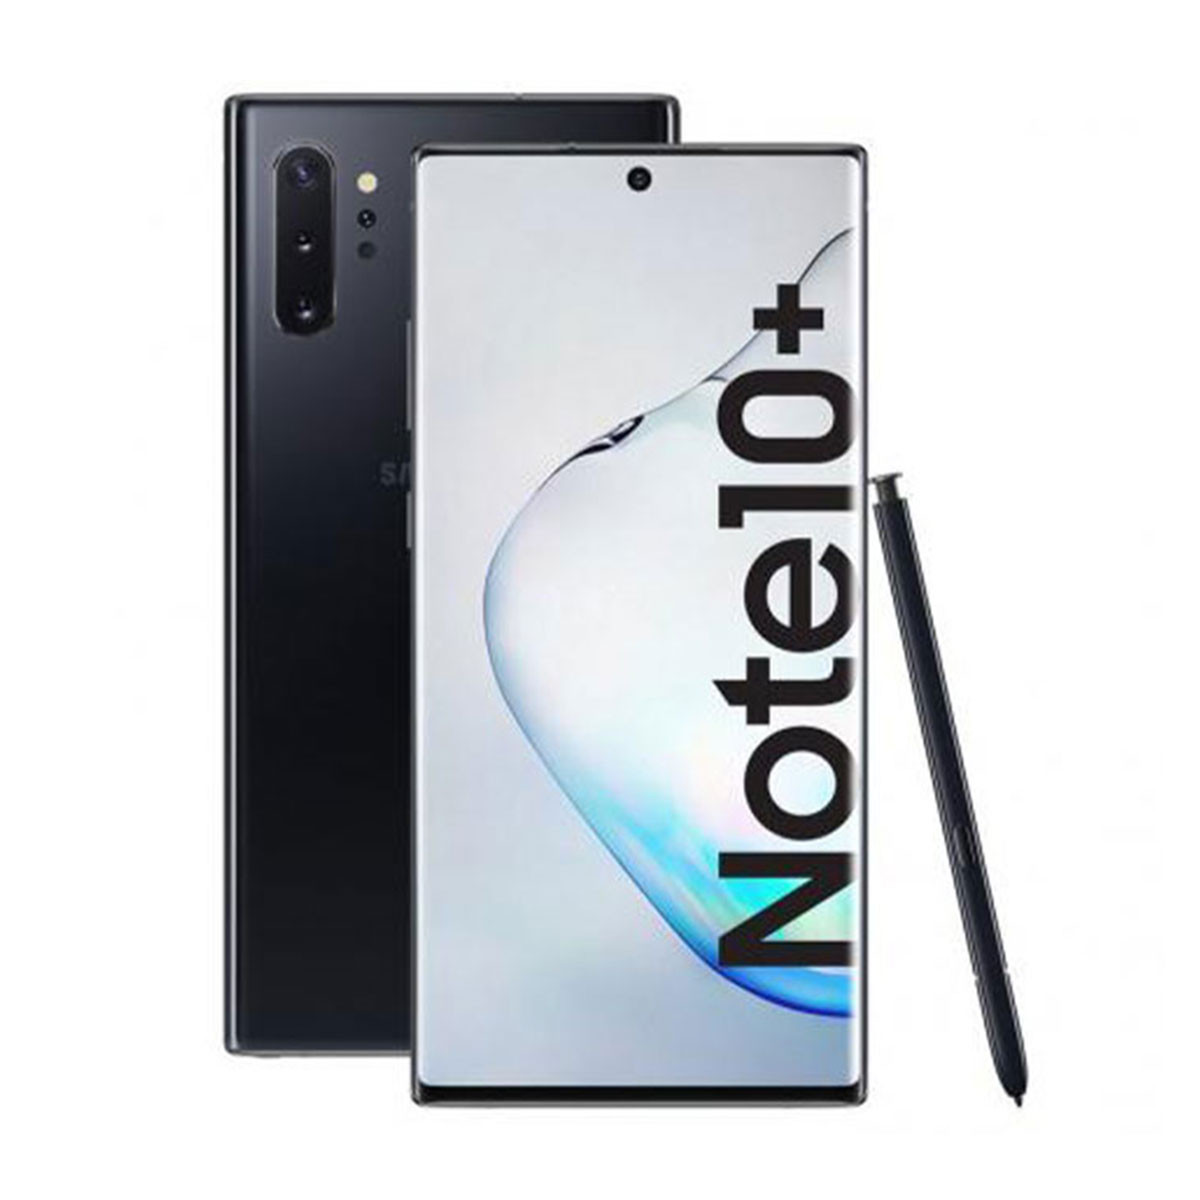 Samsung Galaxy Note 10 Plus Dual Sim Negro Cosmos 256Gb Reacondicionado